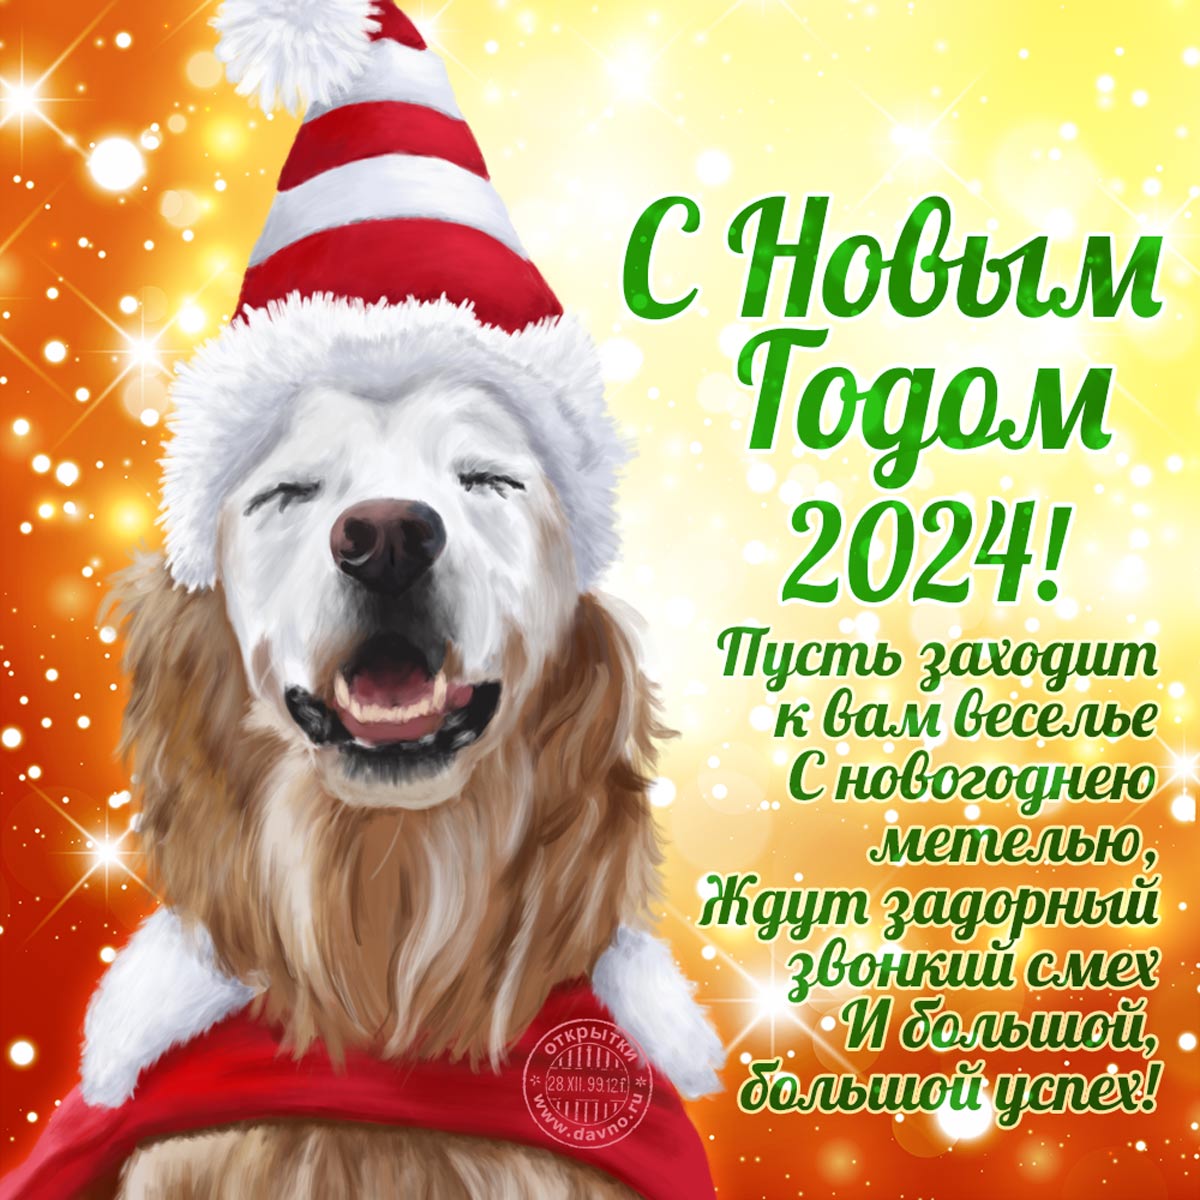 Классная открытка, красивая собака, отличные стихи с новым годом